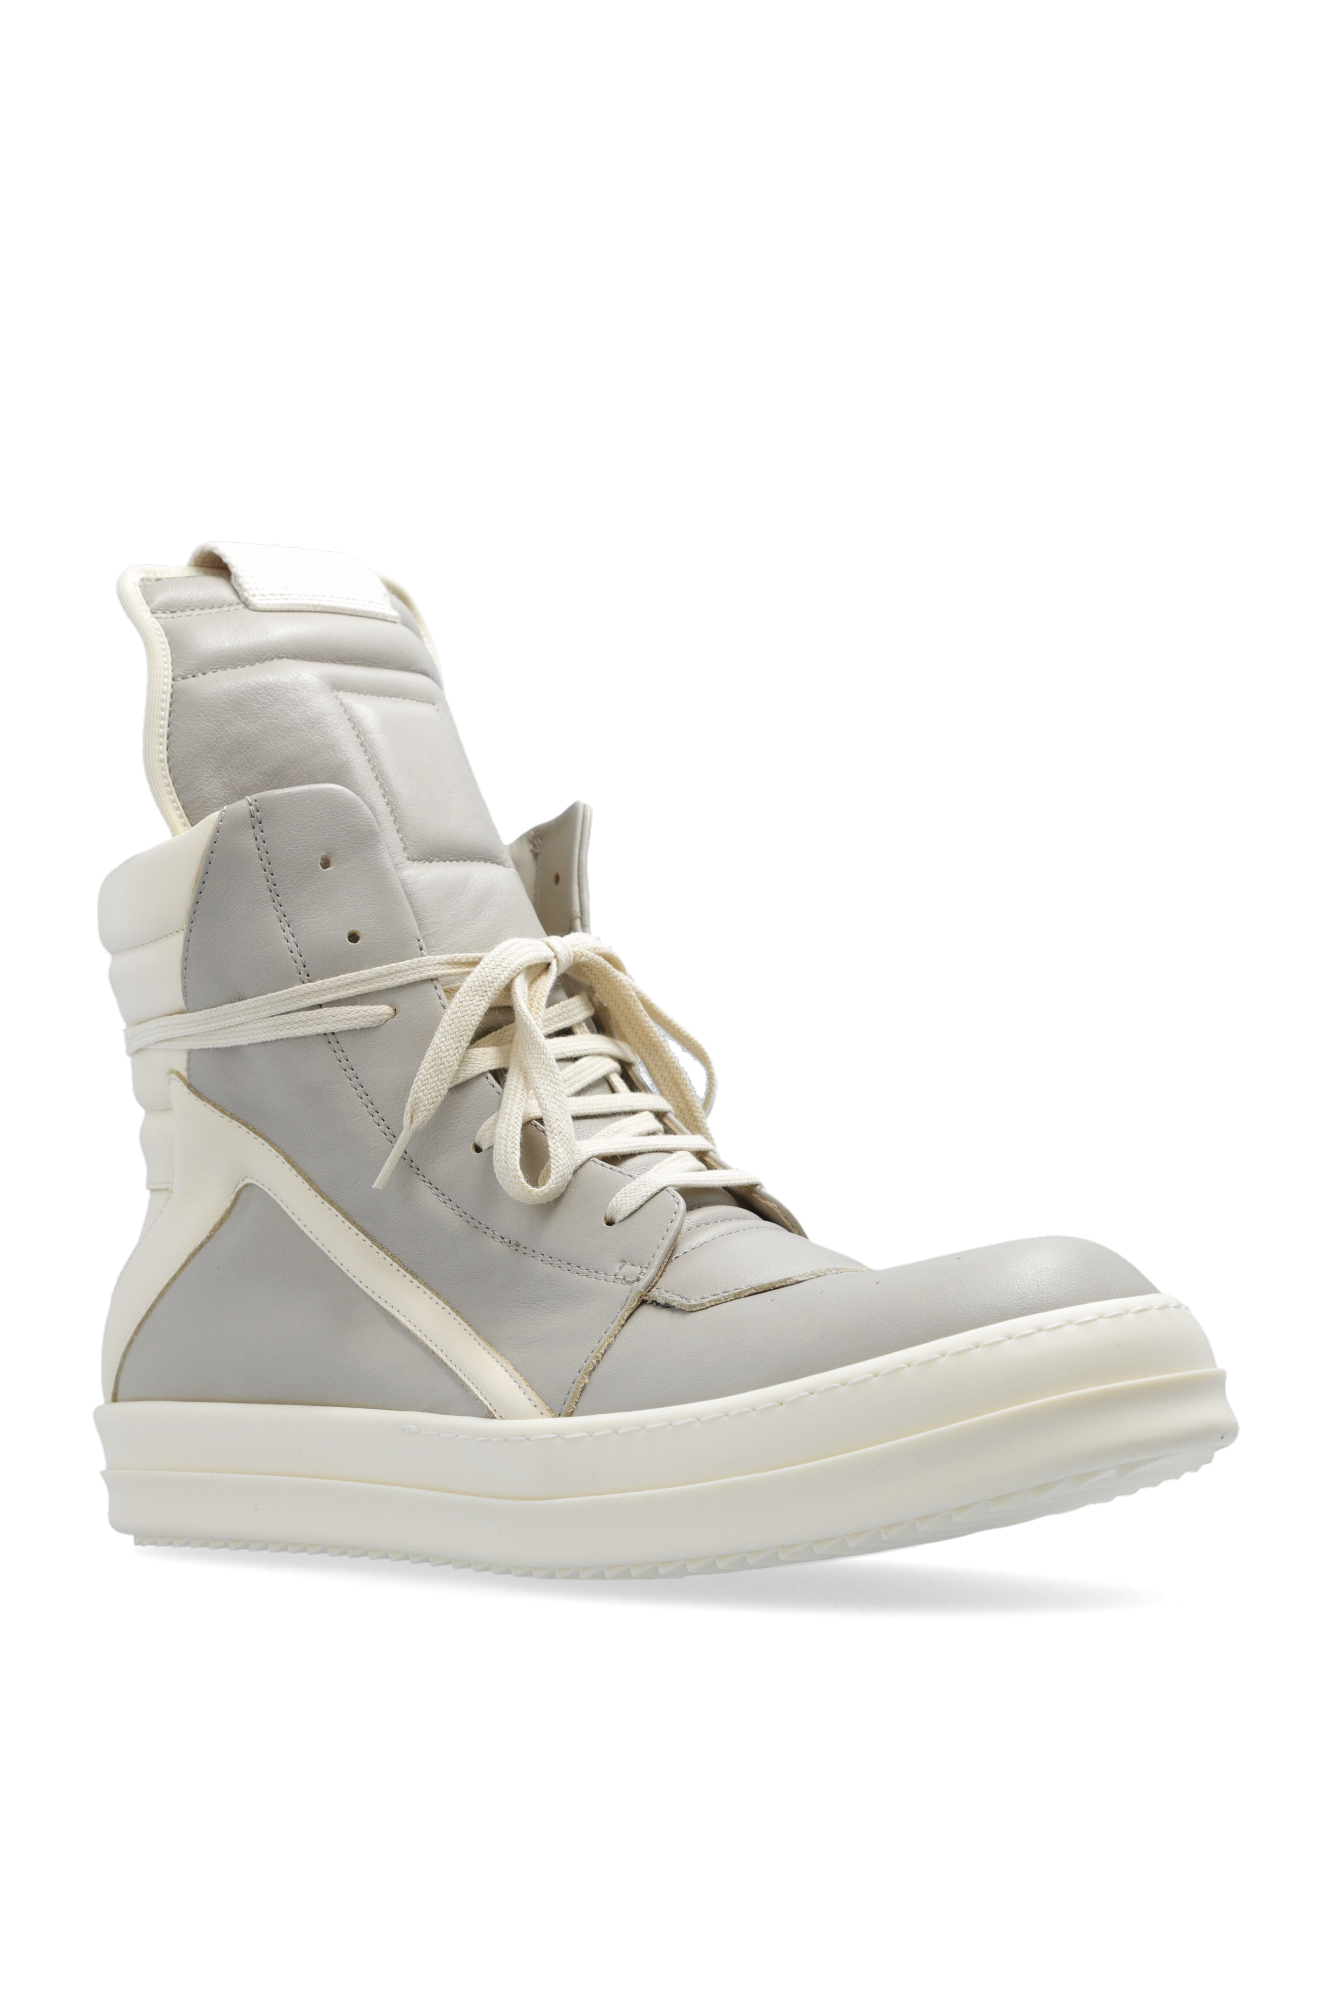 Rick Owens ‘Geo’ high-top sneakers